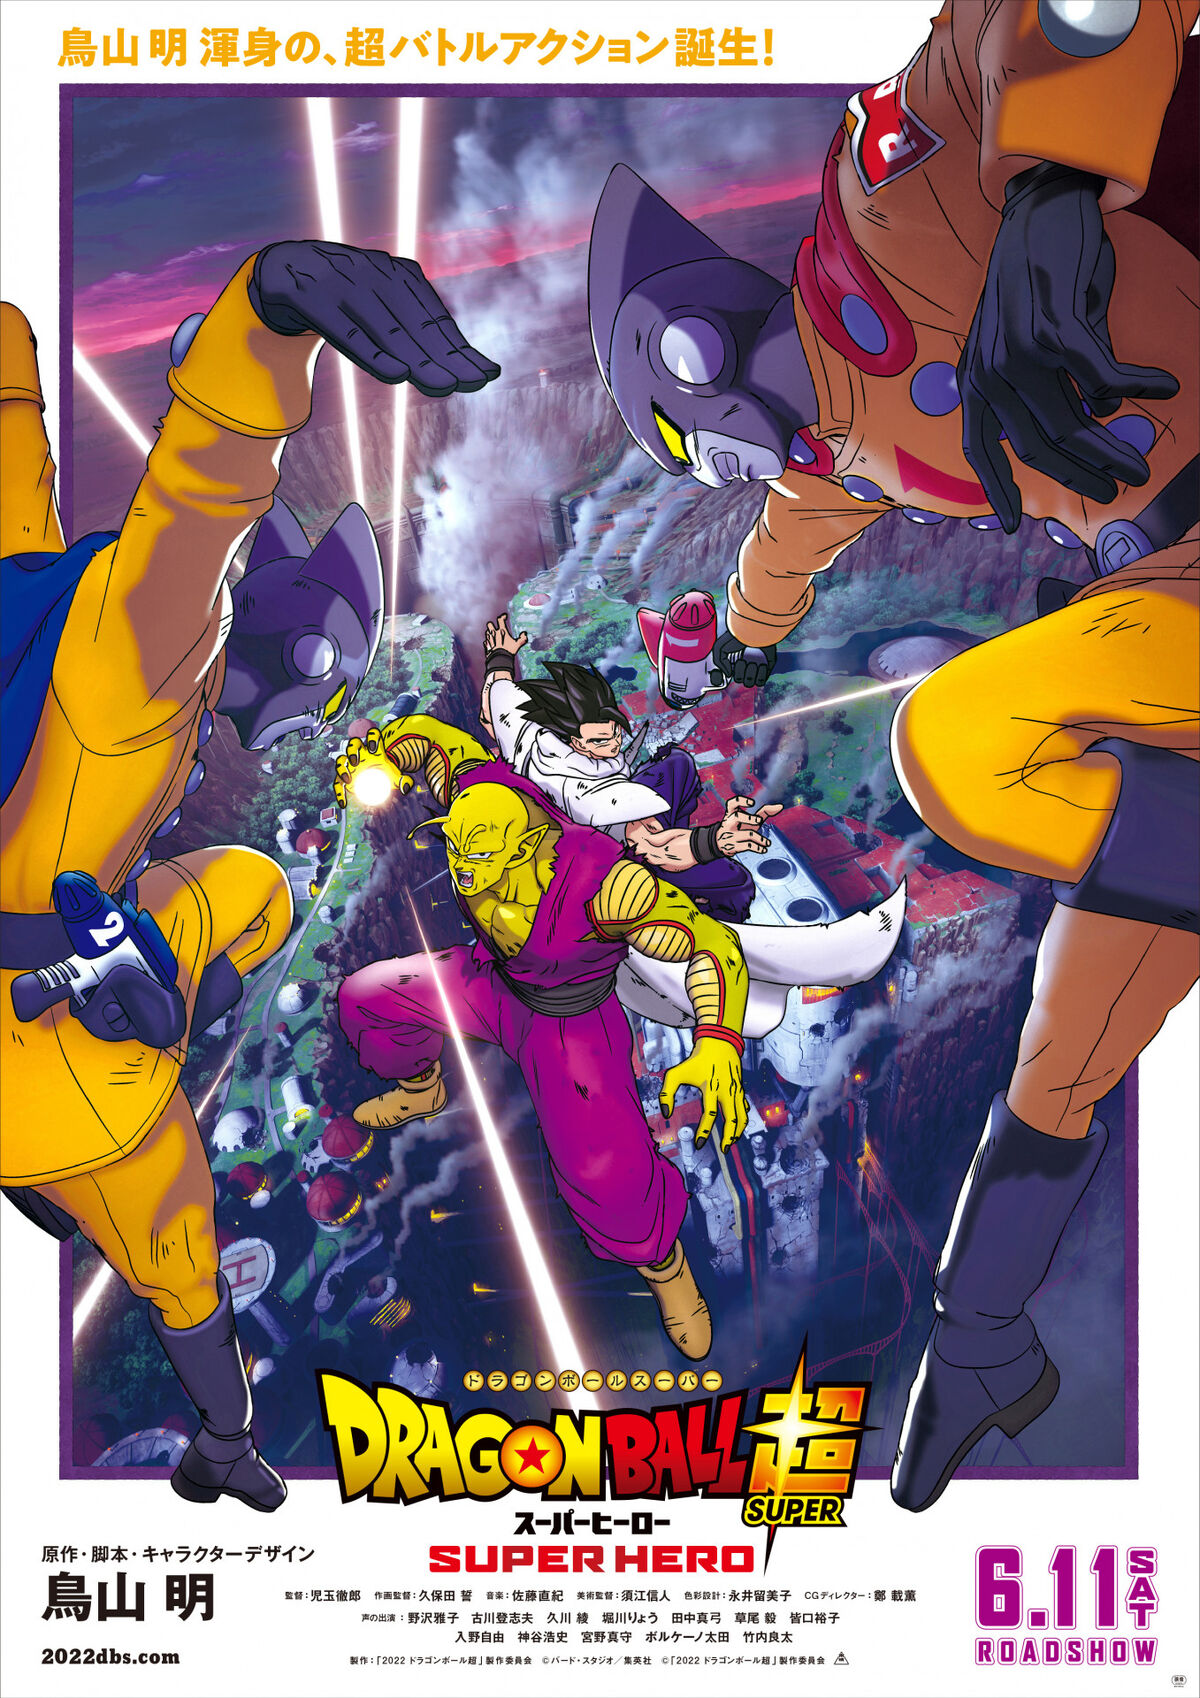 Dragon Ball Super: Super Hero revela forma final de Gohan em